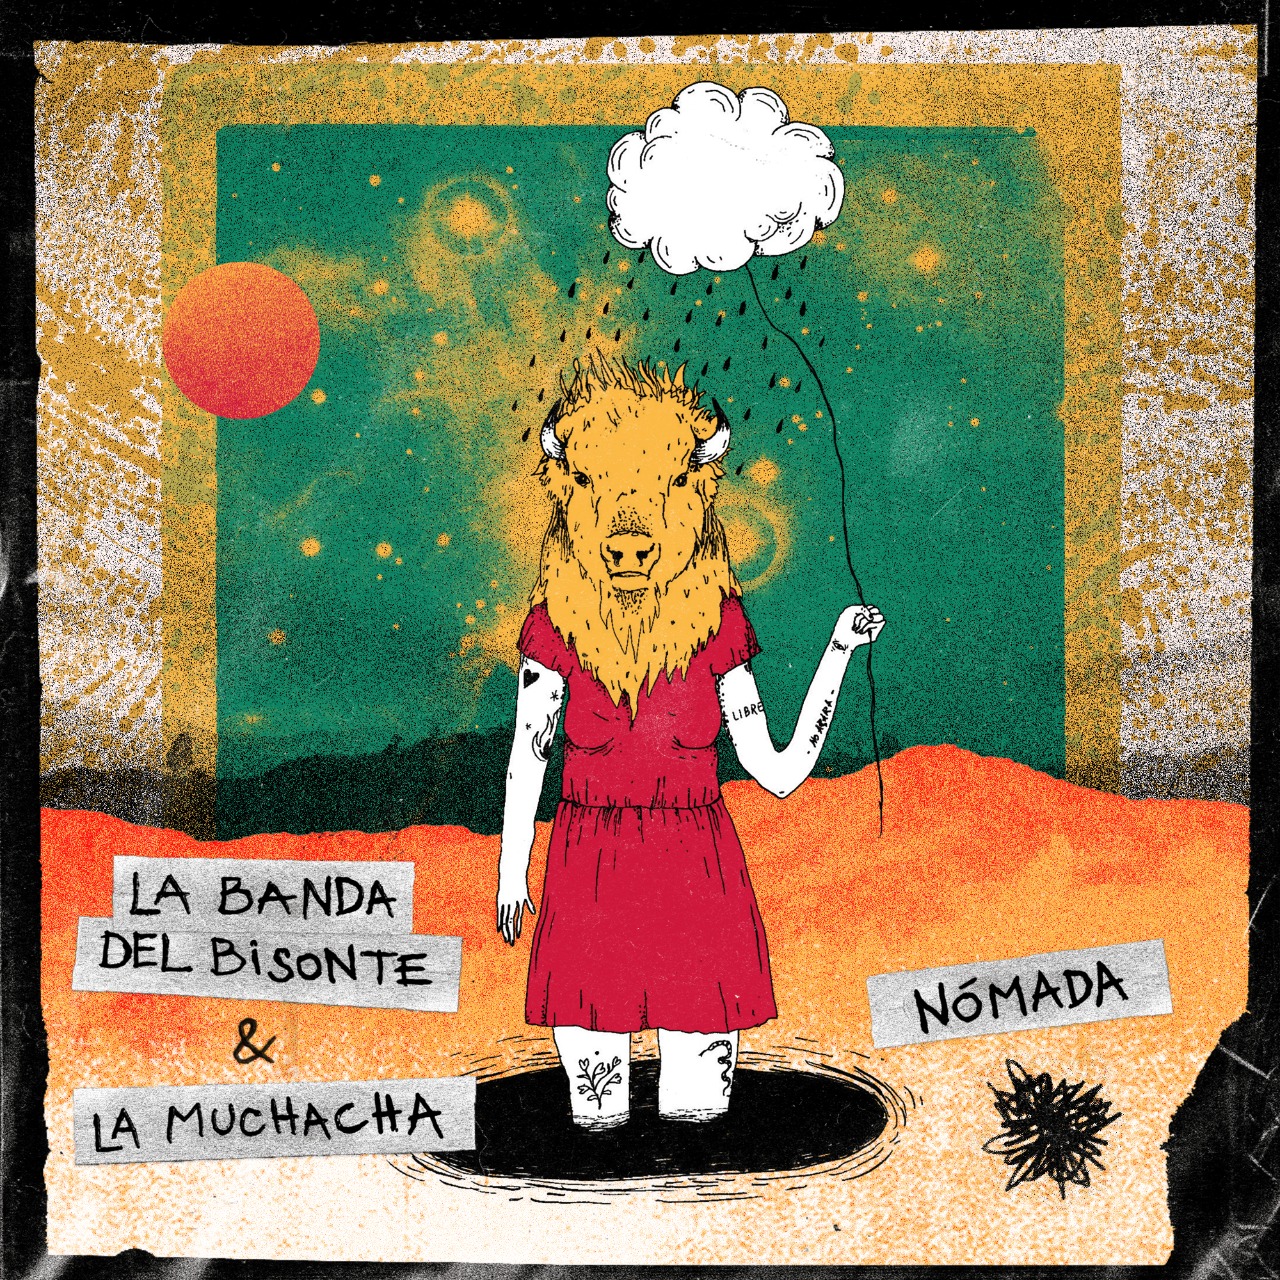 Escucha 'Nómada', lo nuevo de La Banda del Bisonte y La Muchacha